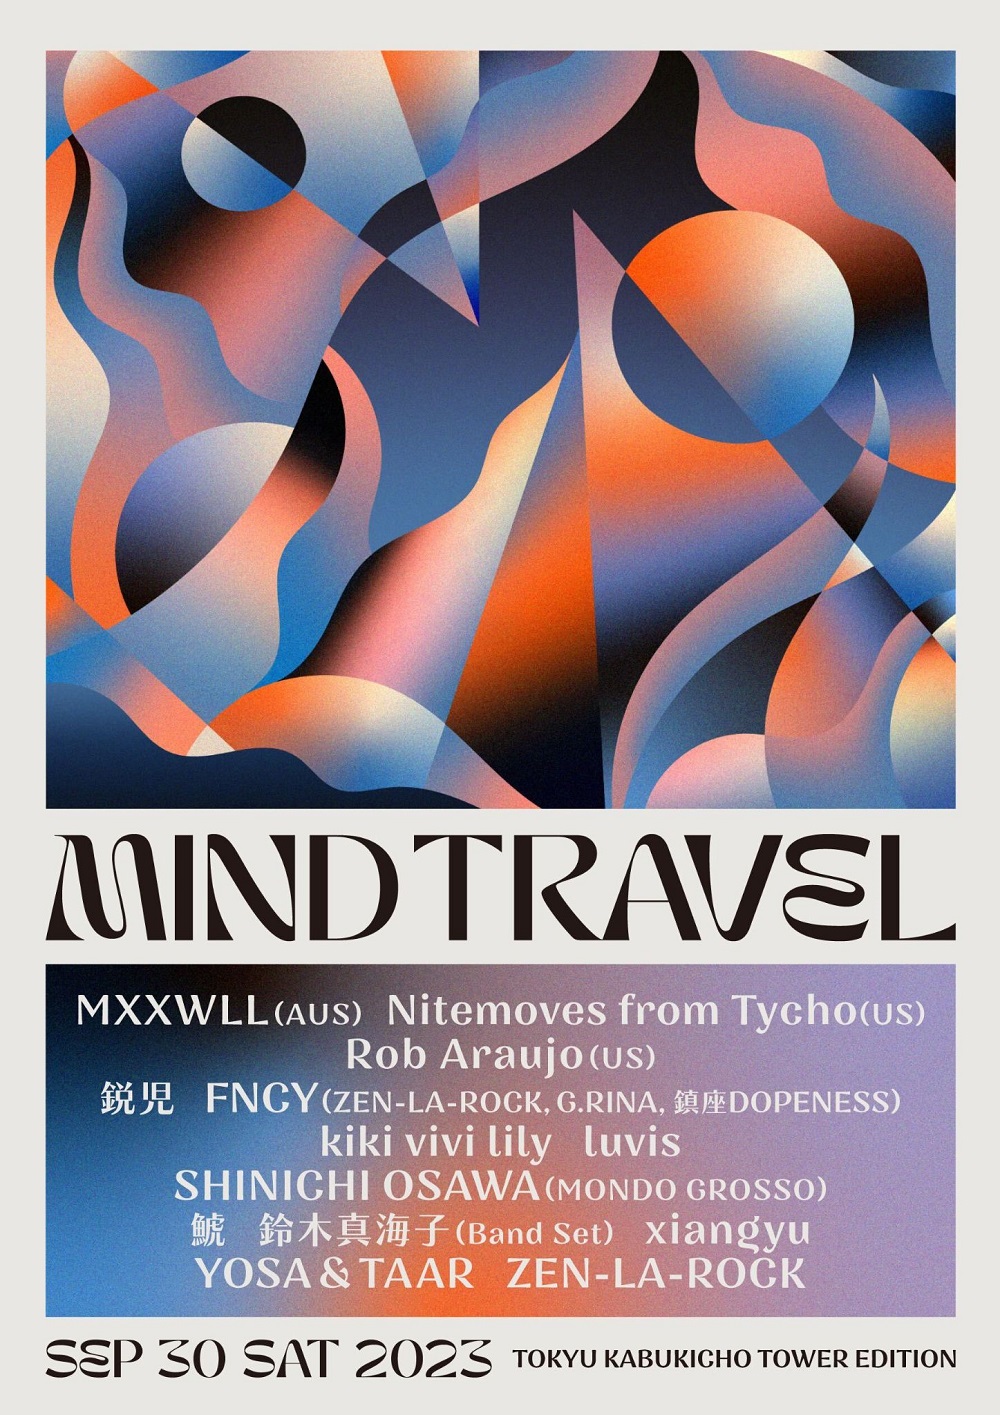 リゾート音楽フェス【MIND TRAVEL】第1弾でSHINICHI OSAWA／MXXWLL 